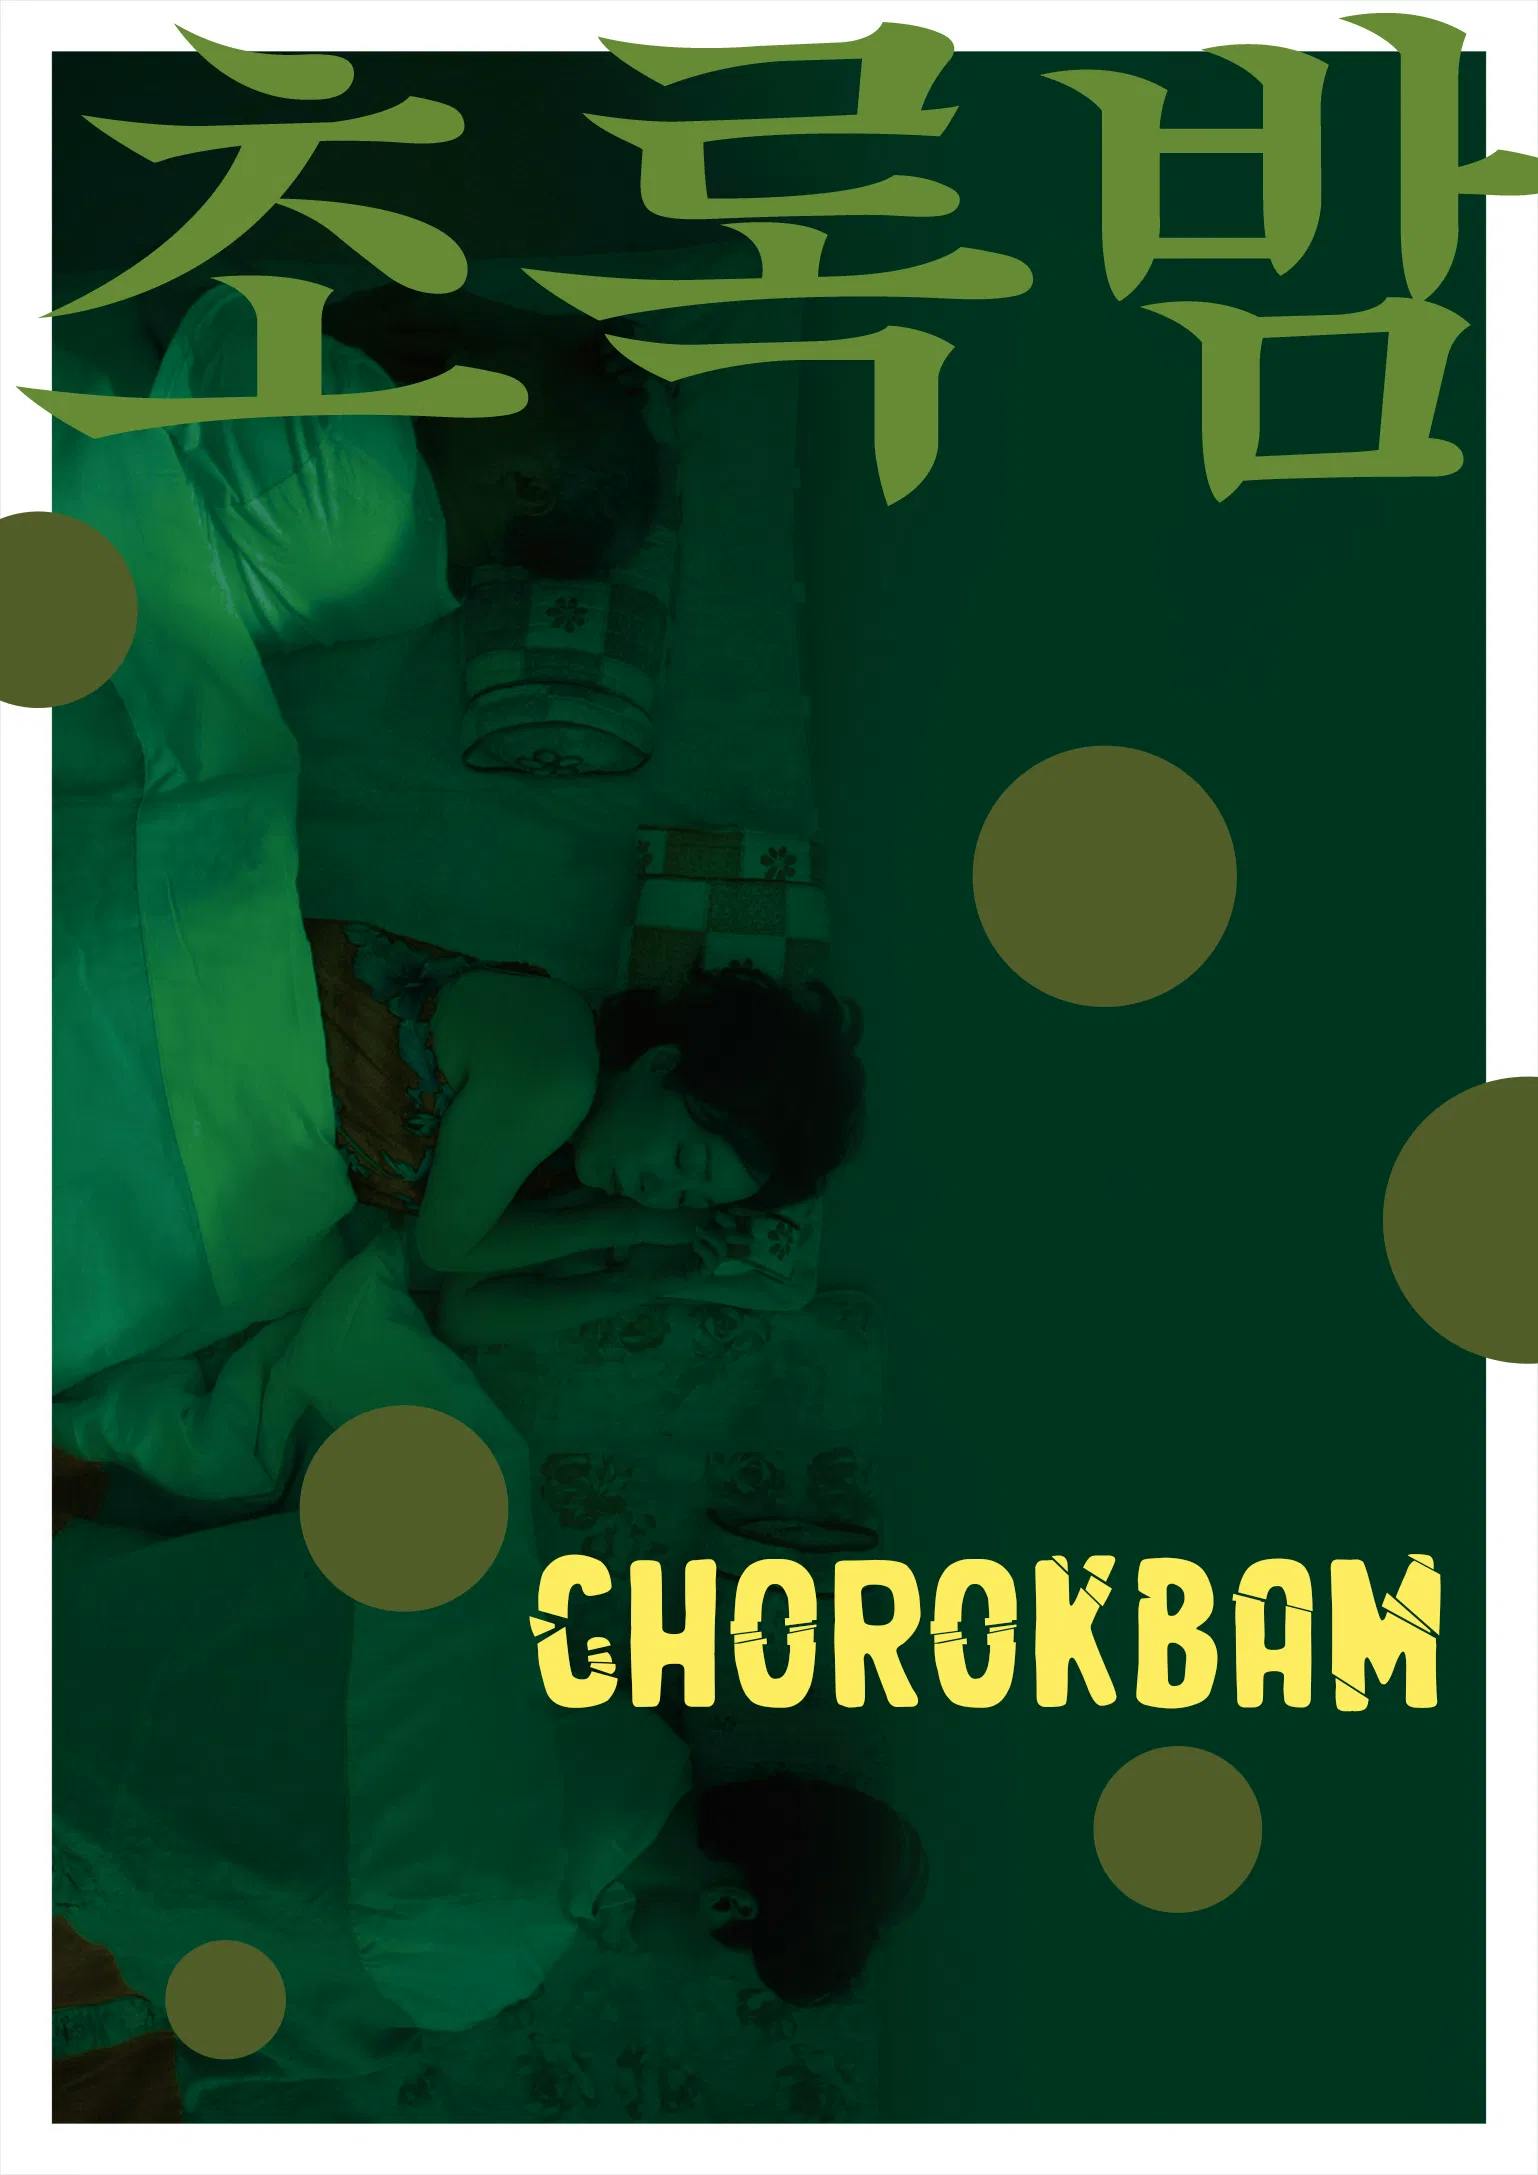 Chorokbam poster